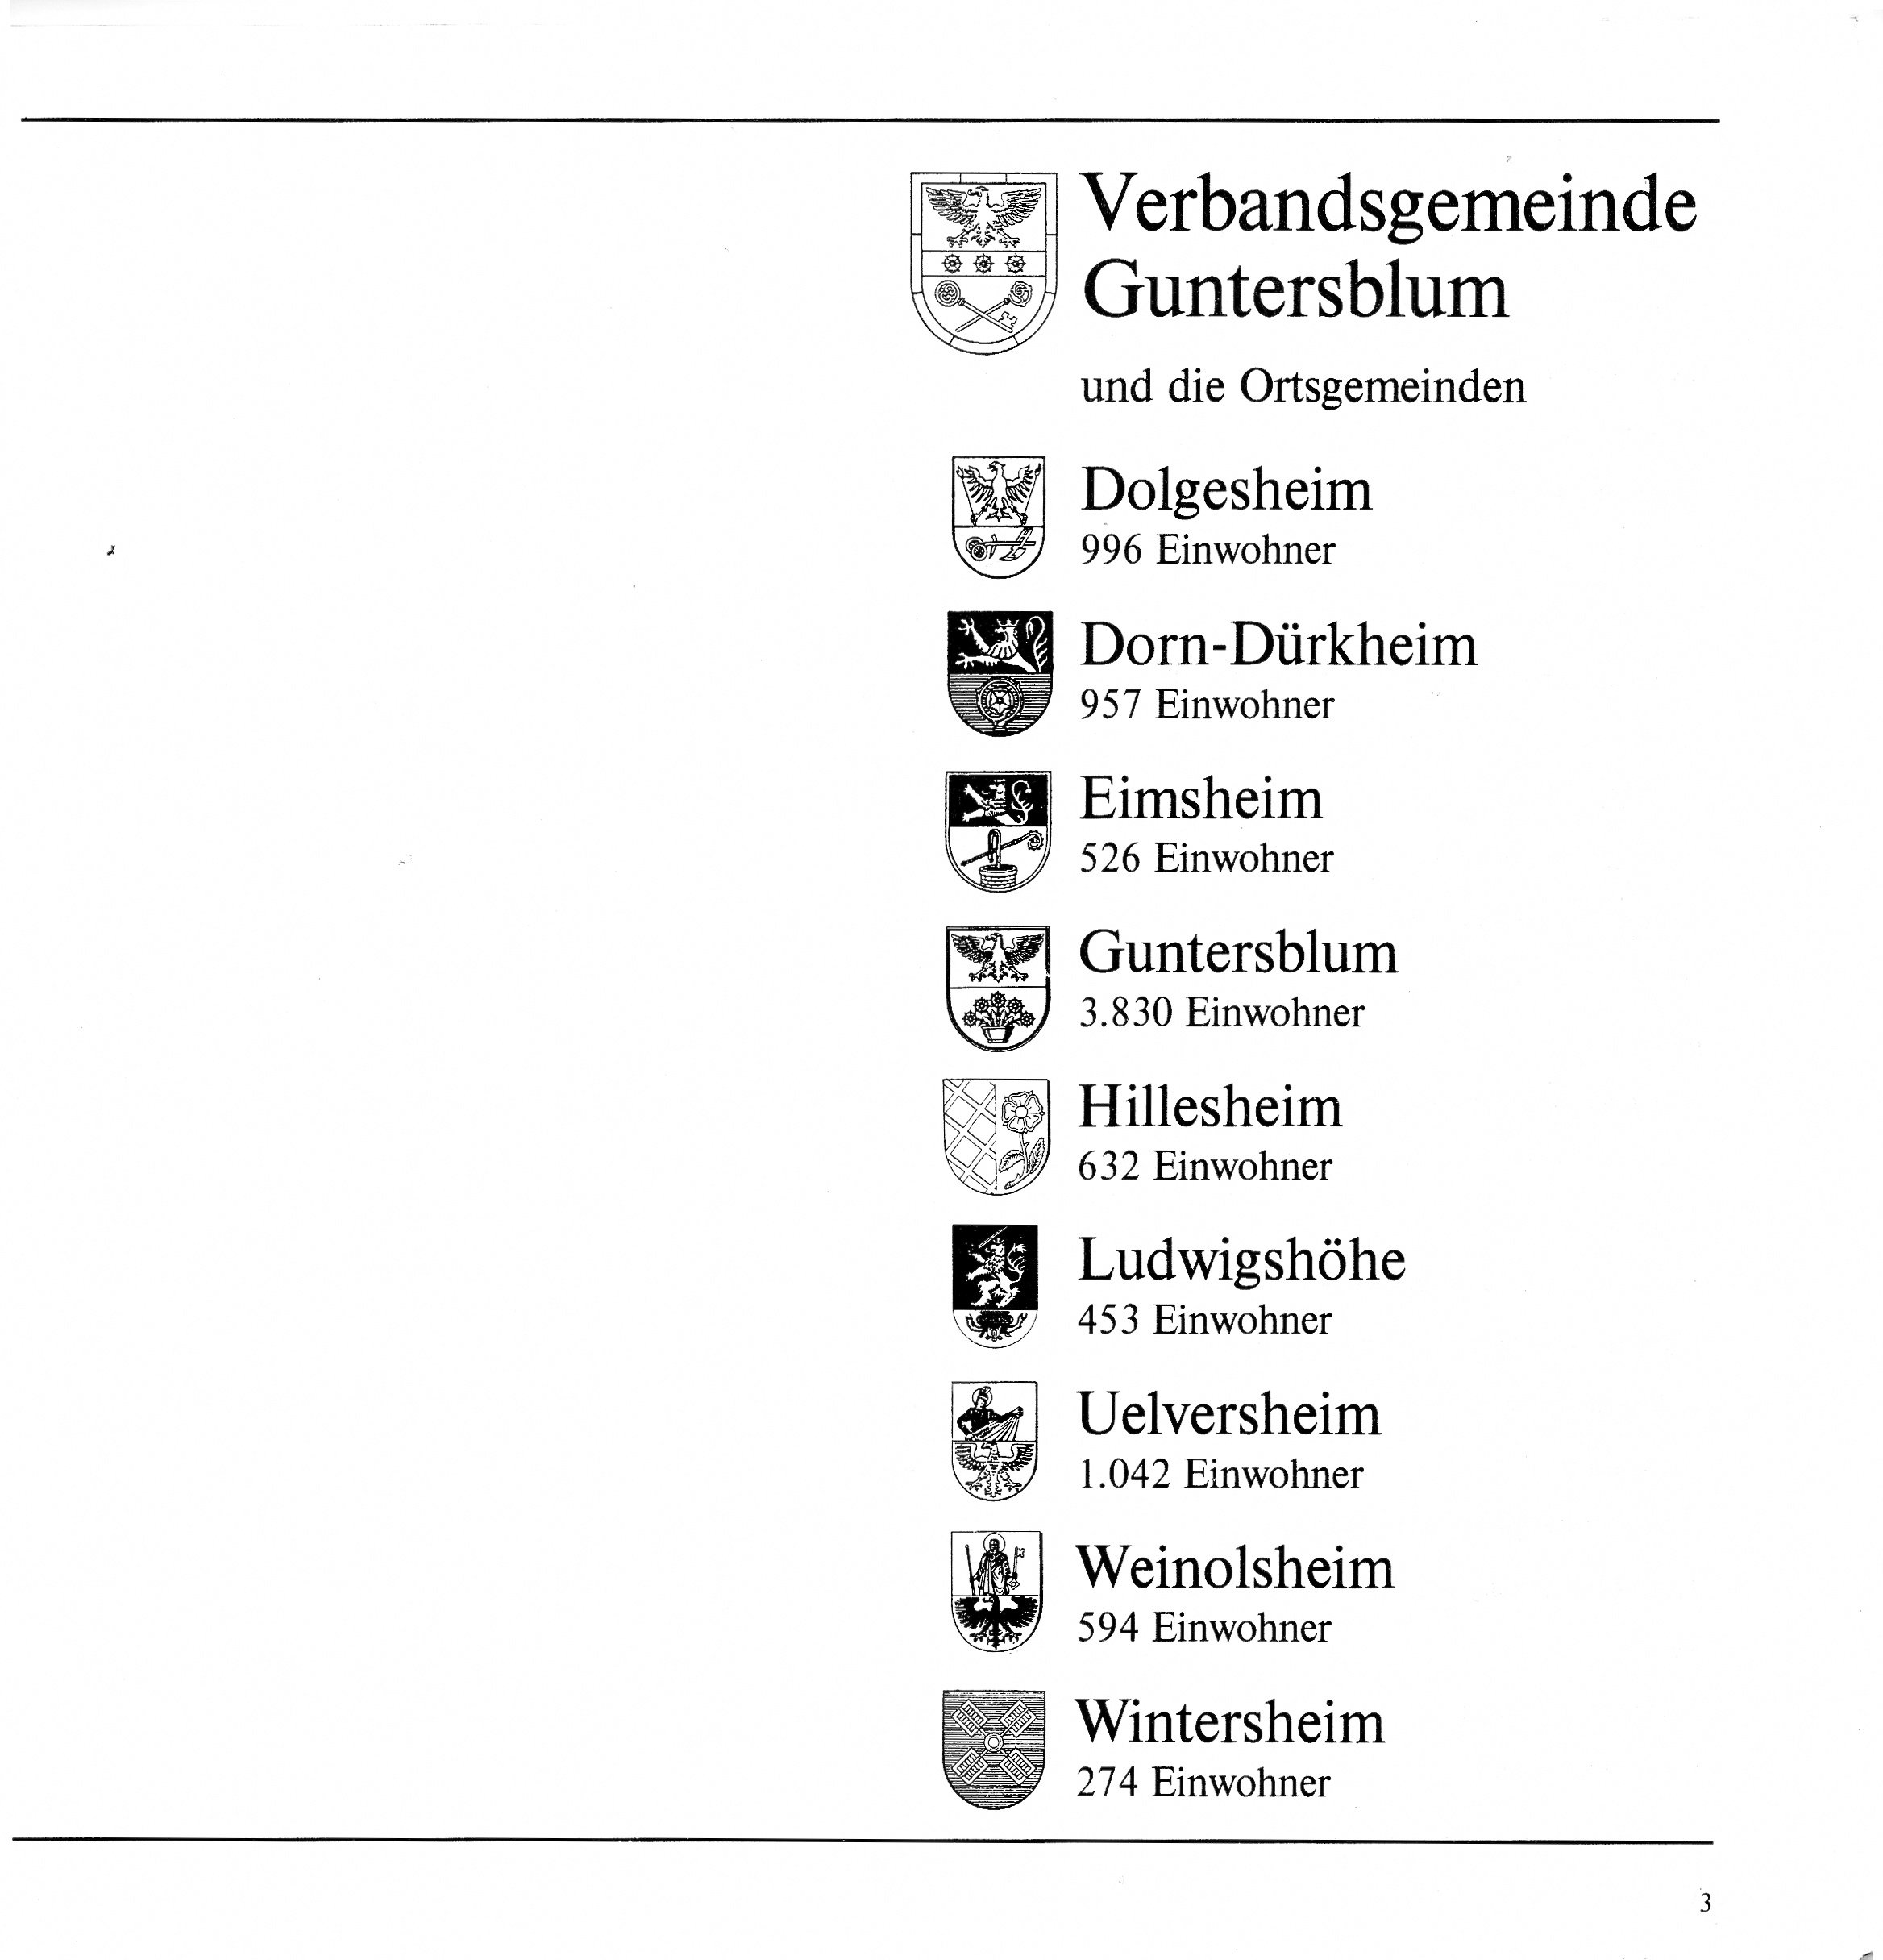 Informationsheft Verbandsgemeinde Guntersblum (Kulturverein Guntersblum CC BY-NC-SA)